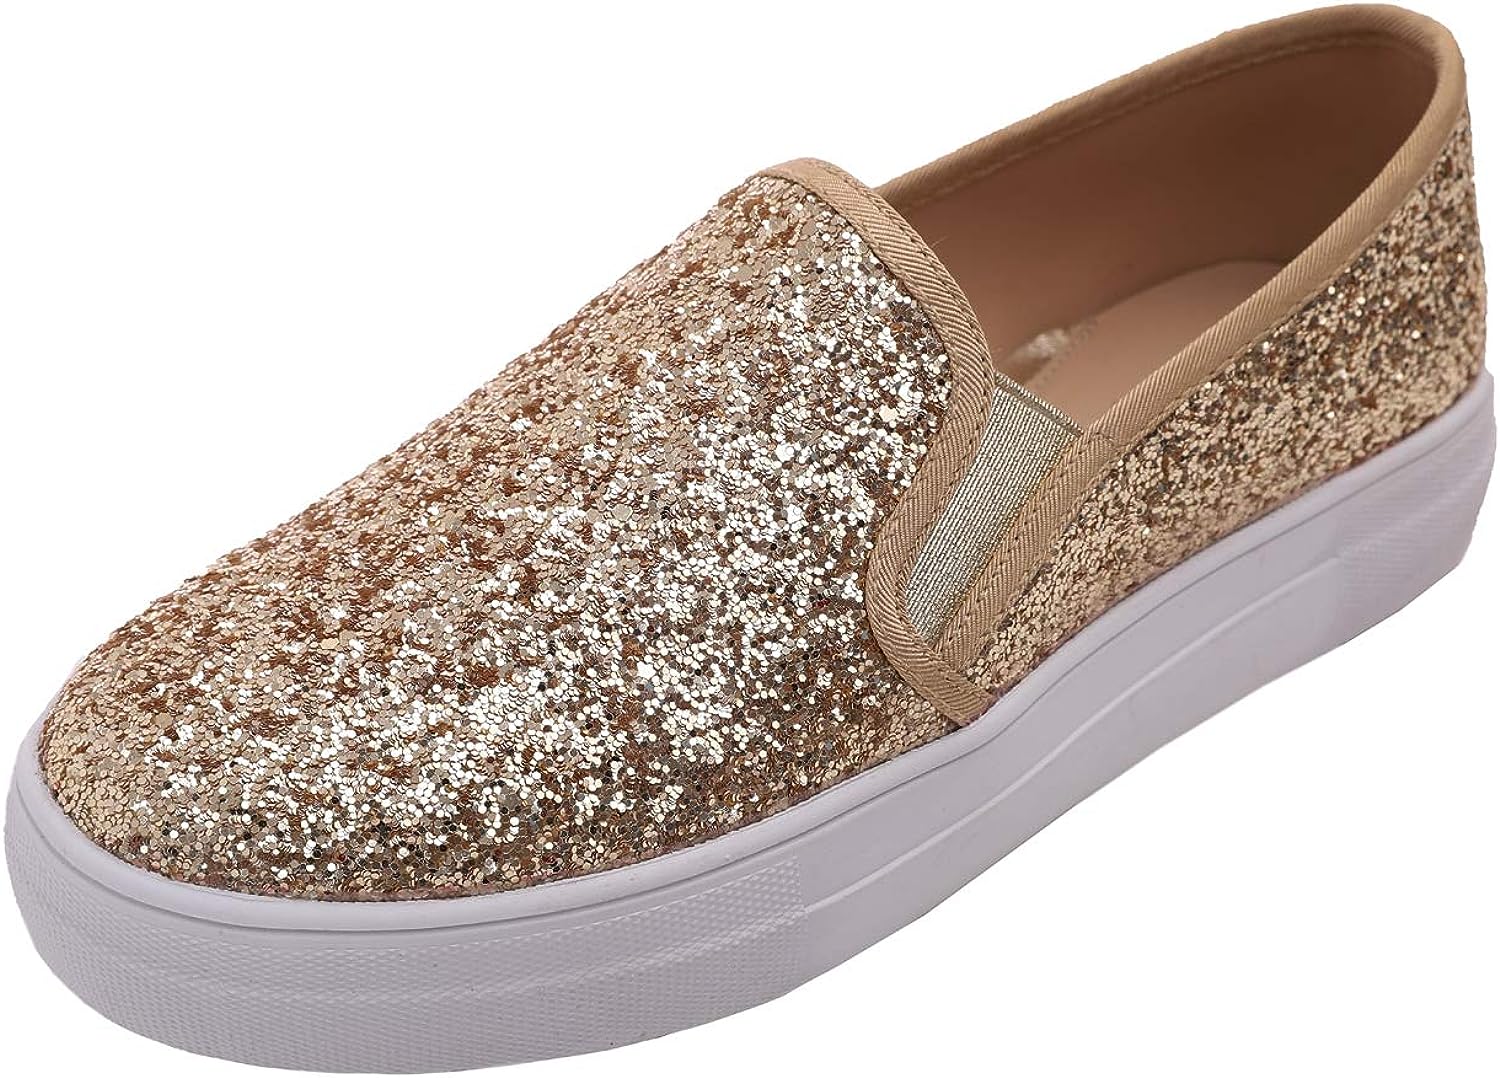 FEVERSOLE Women's Fashion Slip-On Sneaker Casual Flat Loafers - AllEars.Net